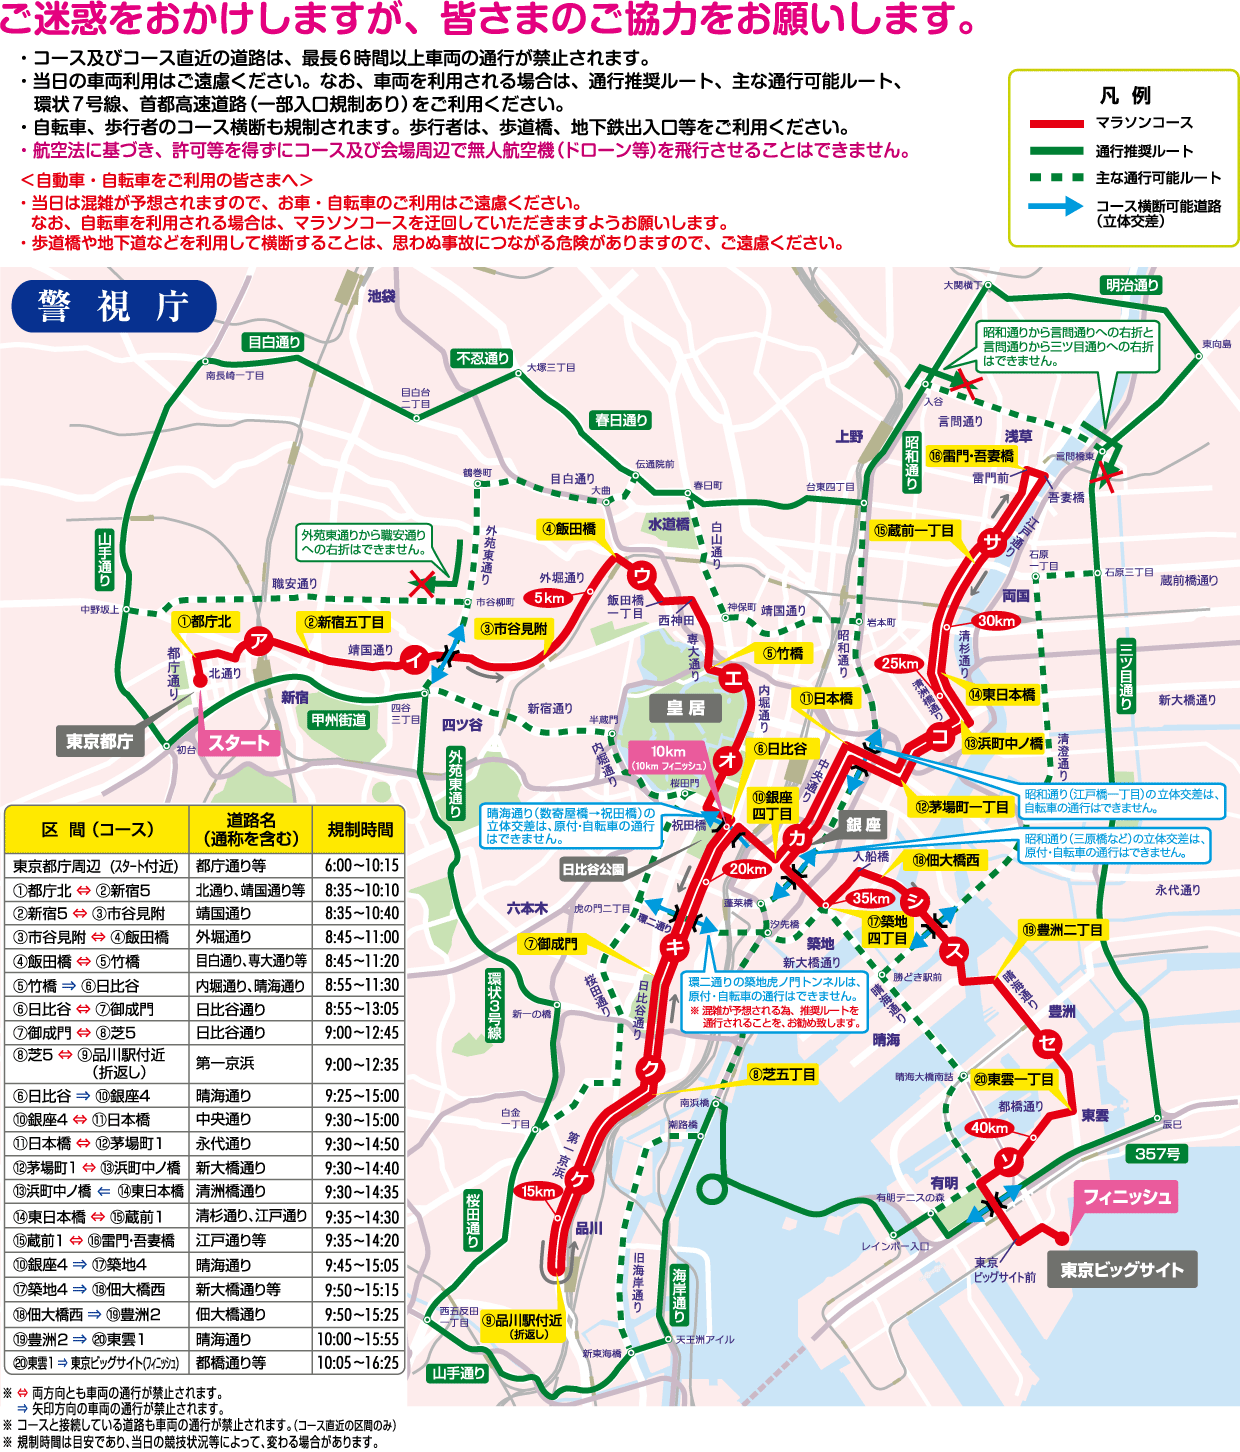 tokyo_marathon_map